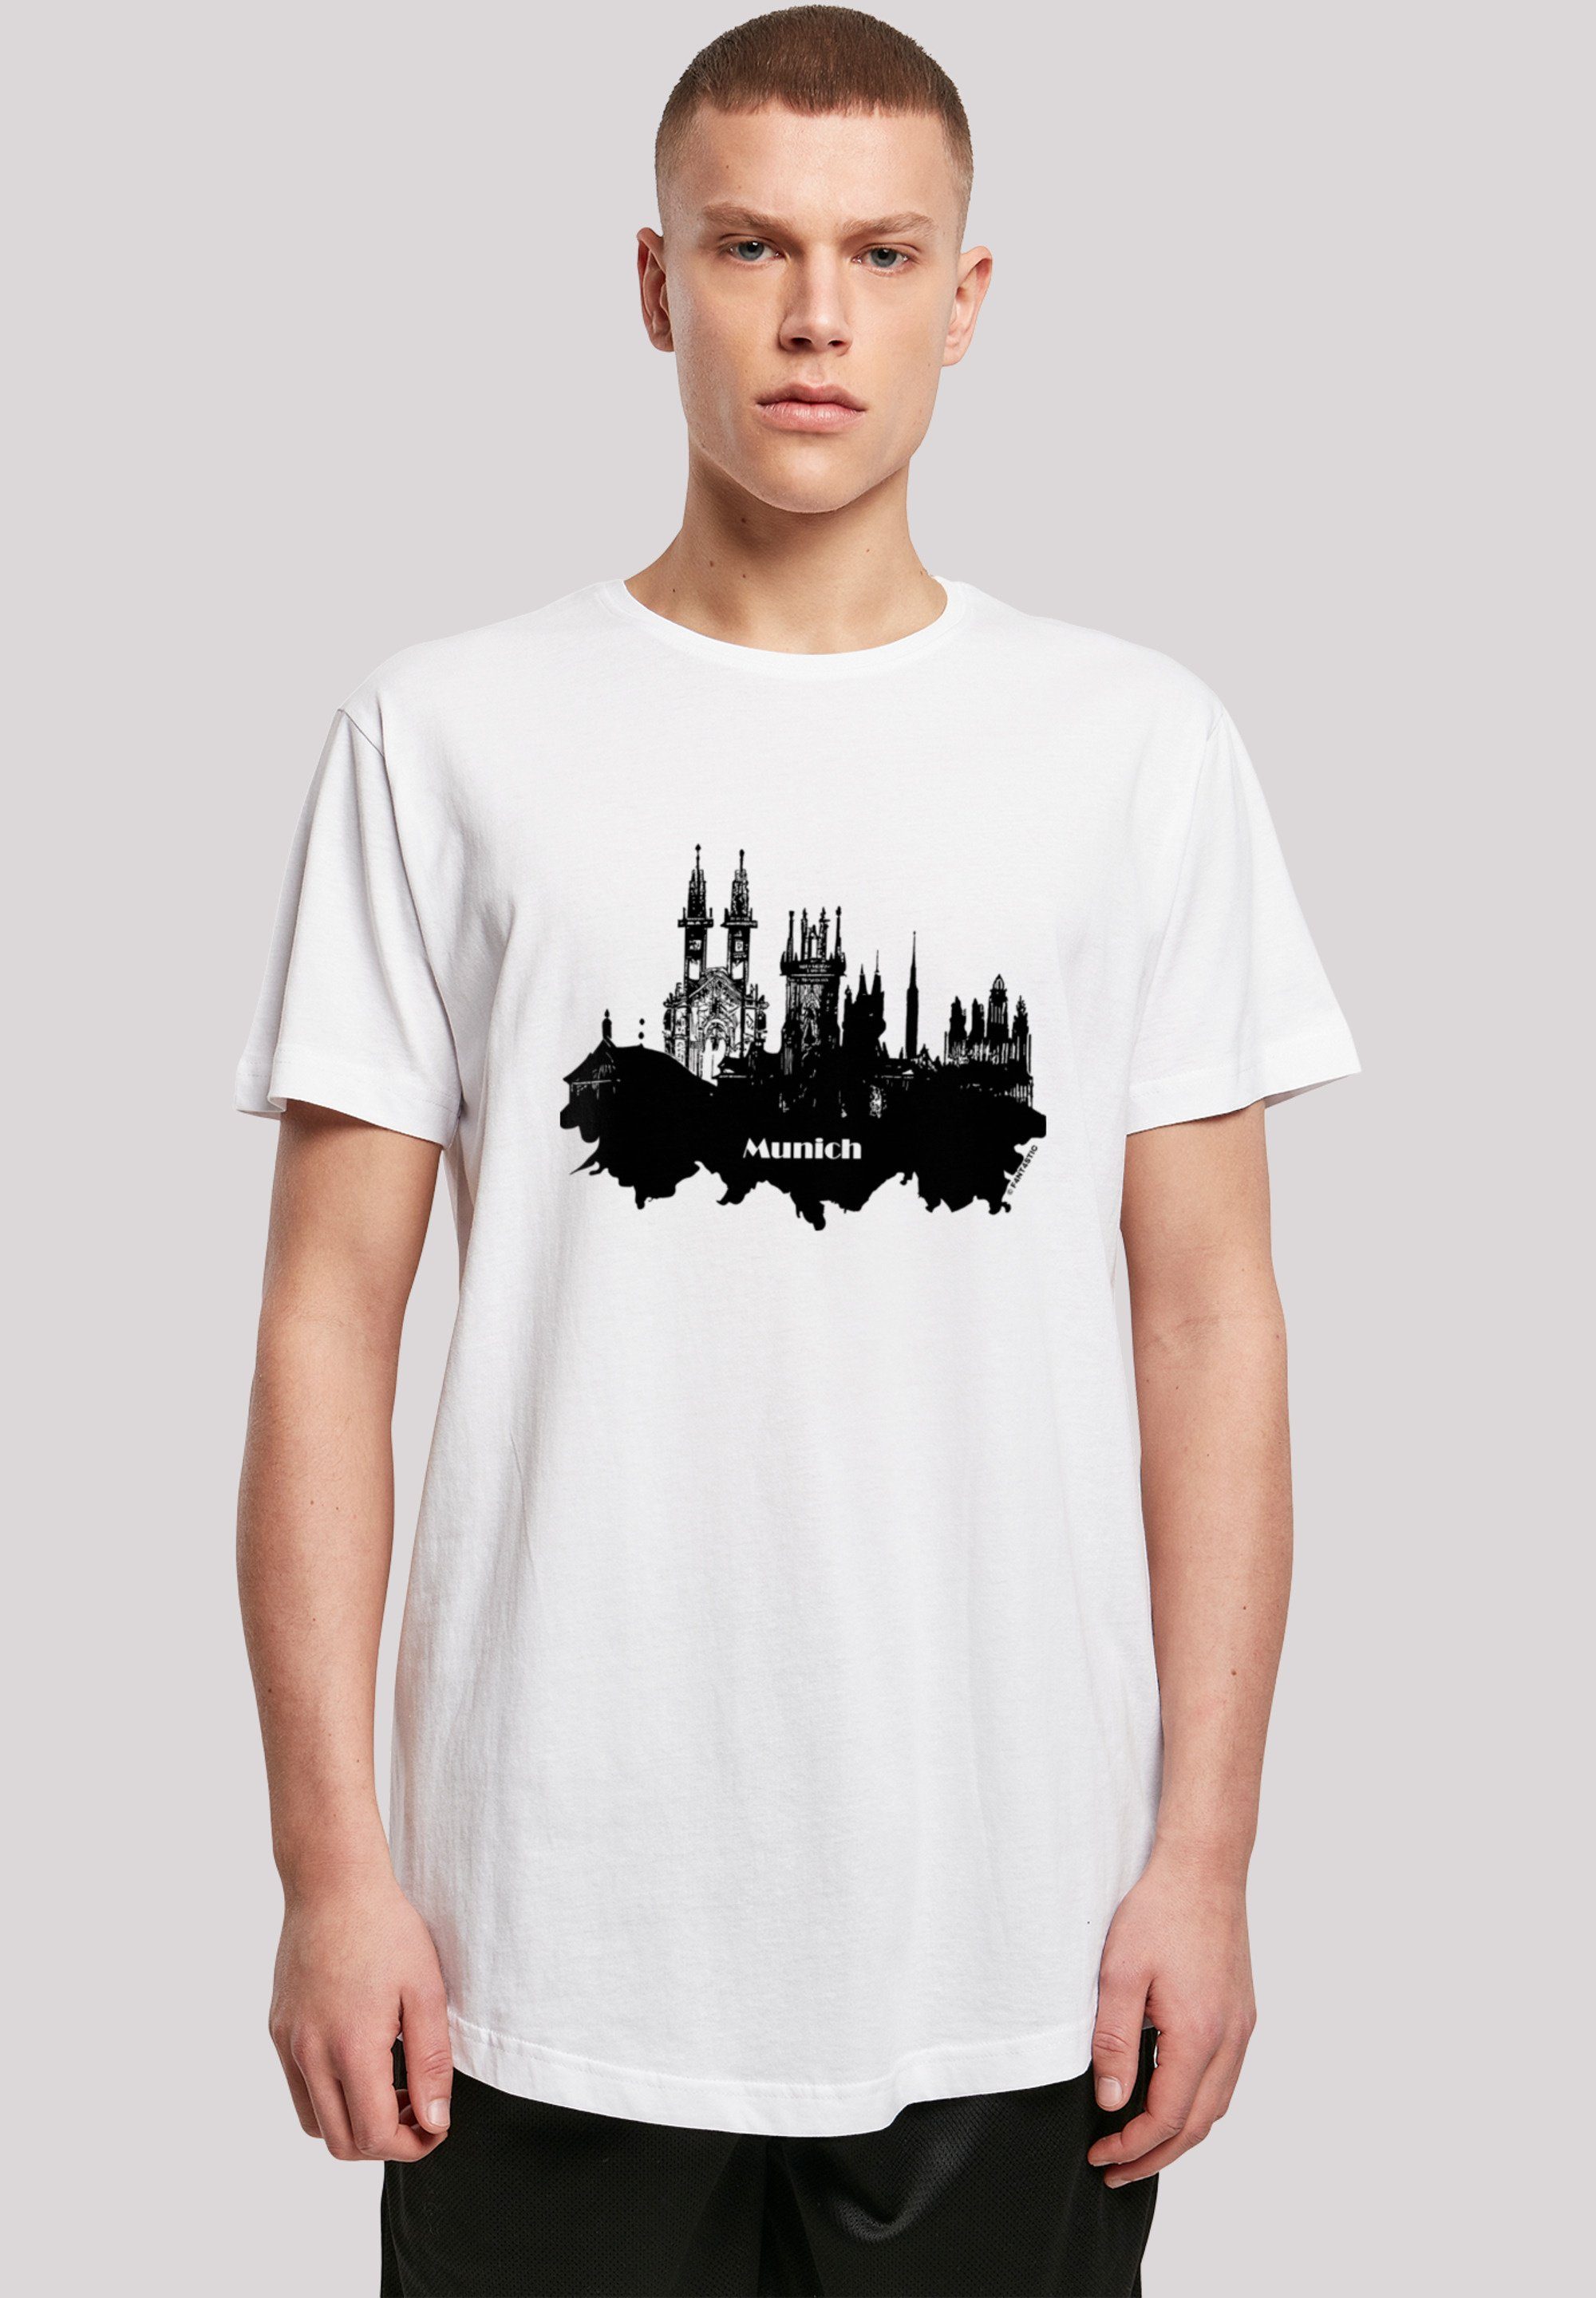 F4NT4STIC T-Shirt Cities Collection Model Das skyline Größe groß und cm Print, 180 M - ist Munich trägt